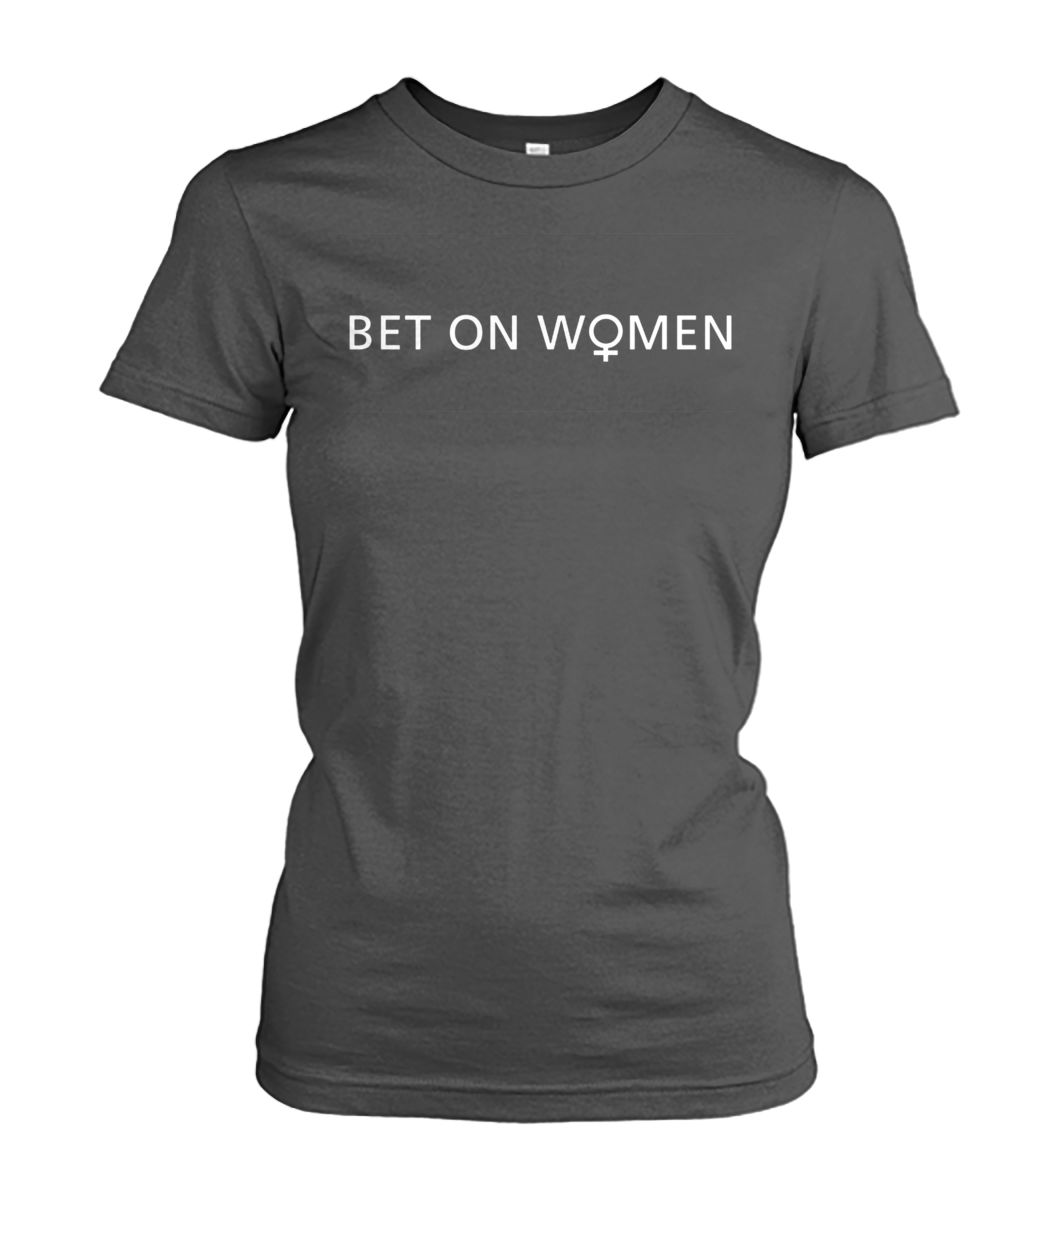 Bet on women women's crew tee